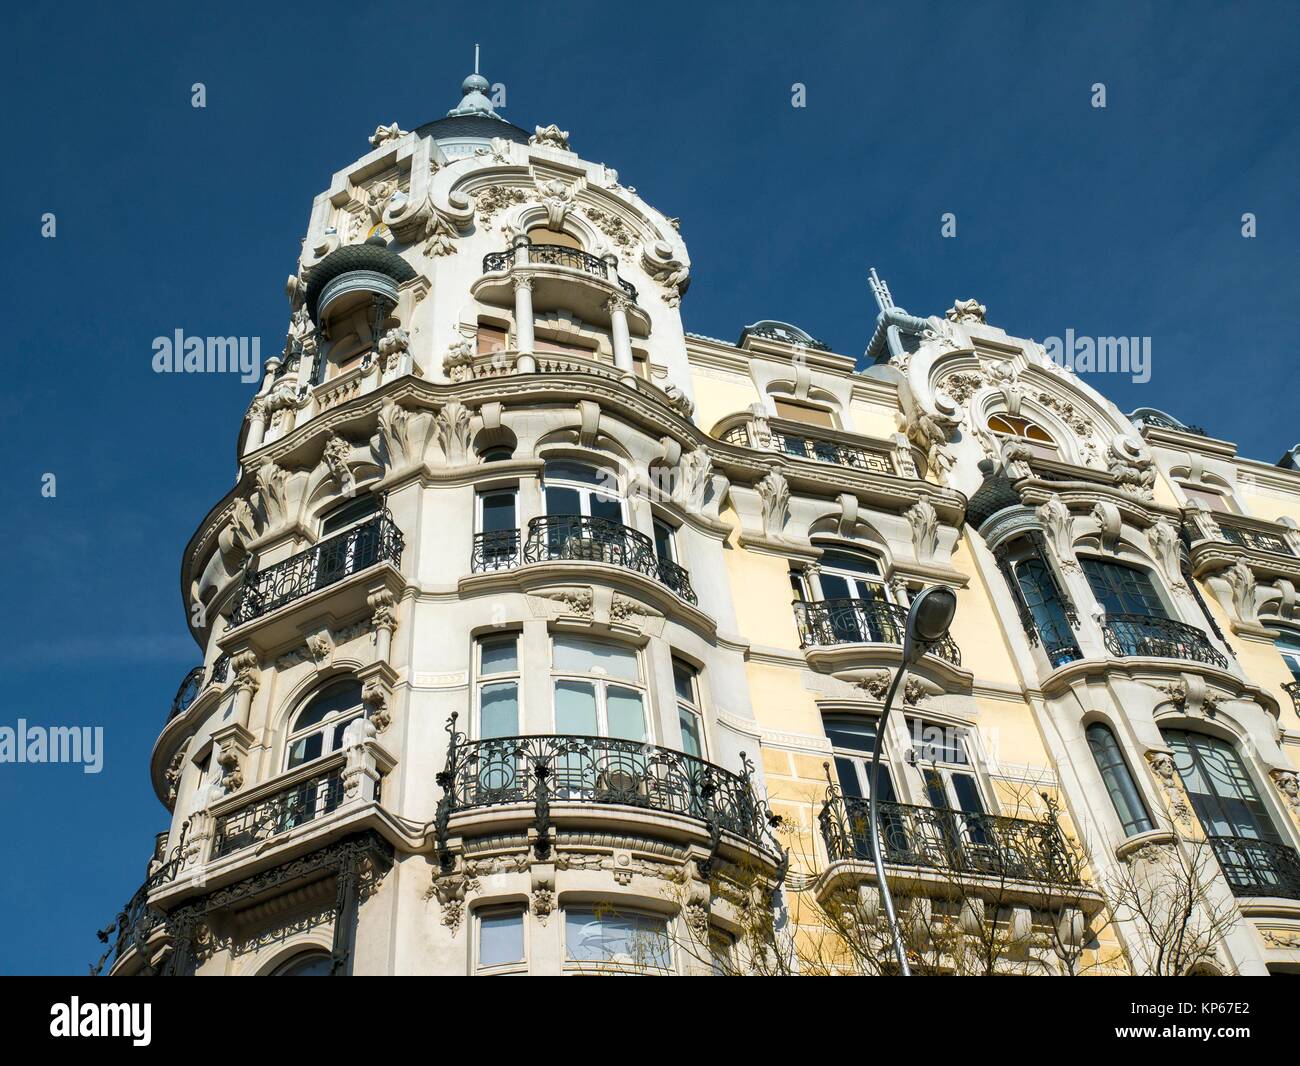 Casa Gallardo, edificio de estilo art nouveau. La Plaza de España. Bien de interés cultural. Madrid, España Foto de stock